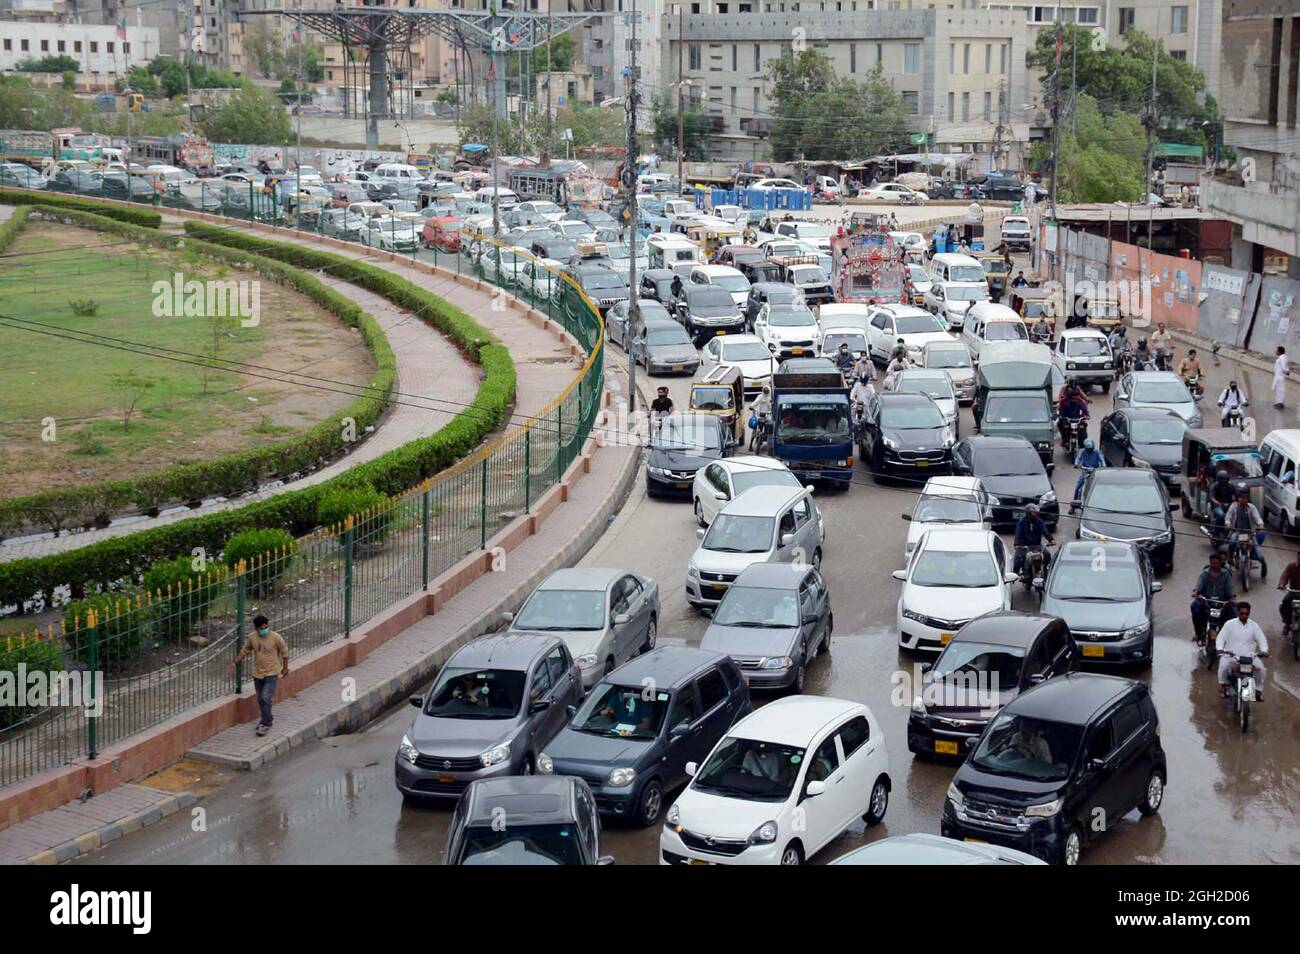 Eine große Anzahl von Fahrzeugen, die nach heftigem Regenguss der Monsunsaison im Stau steckten, zeigt die Fahrlässigkeit der betroffenen Abteilung, die sich am Samstag, dem 04. September 2021, an der Hauptstraße Korangi in Karachi befindet. Stockfoto